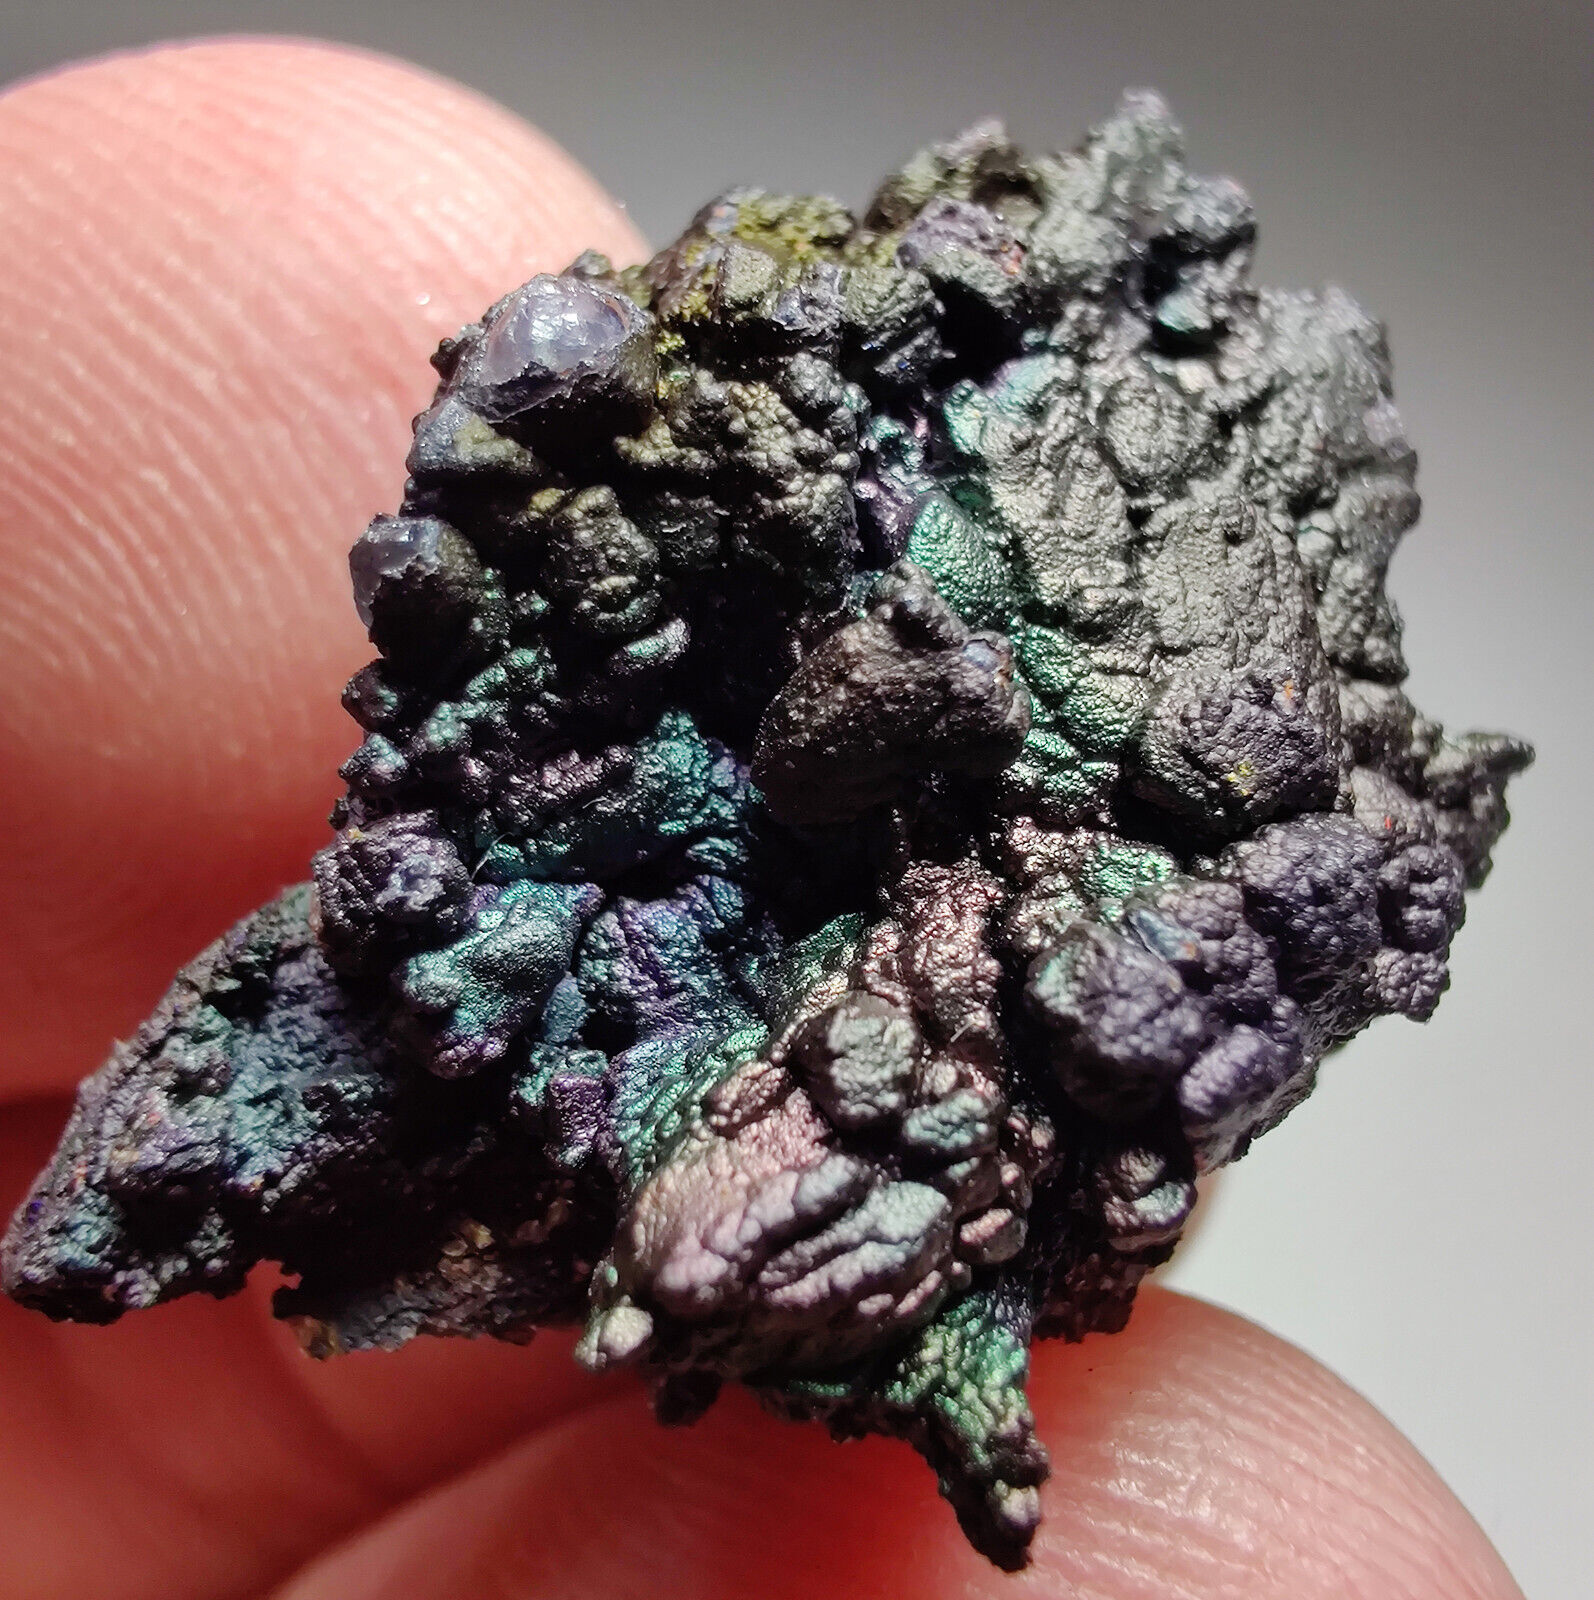 Iridescent Hematite/Turgite on Quartz .  Graves Mtn, Georgia. 4 grams. Video